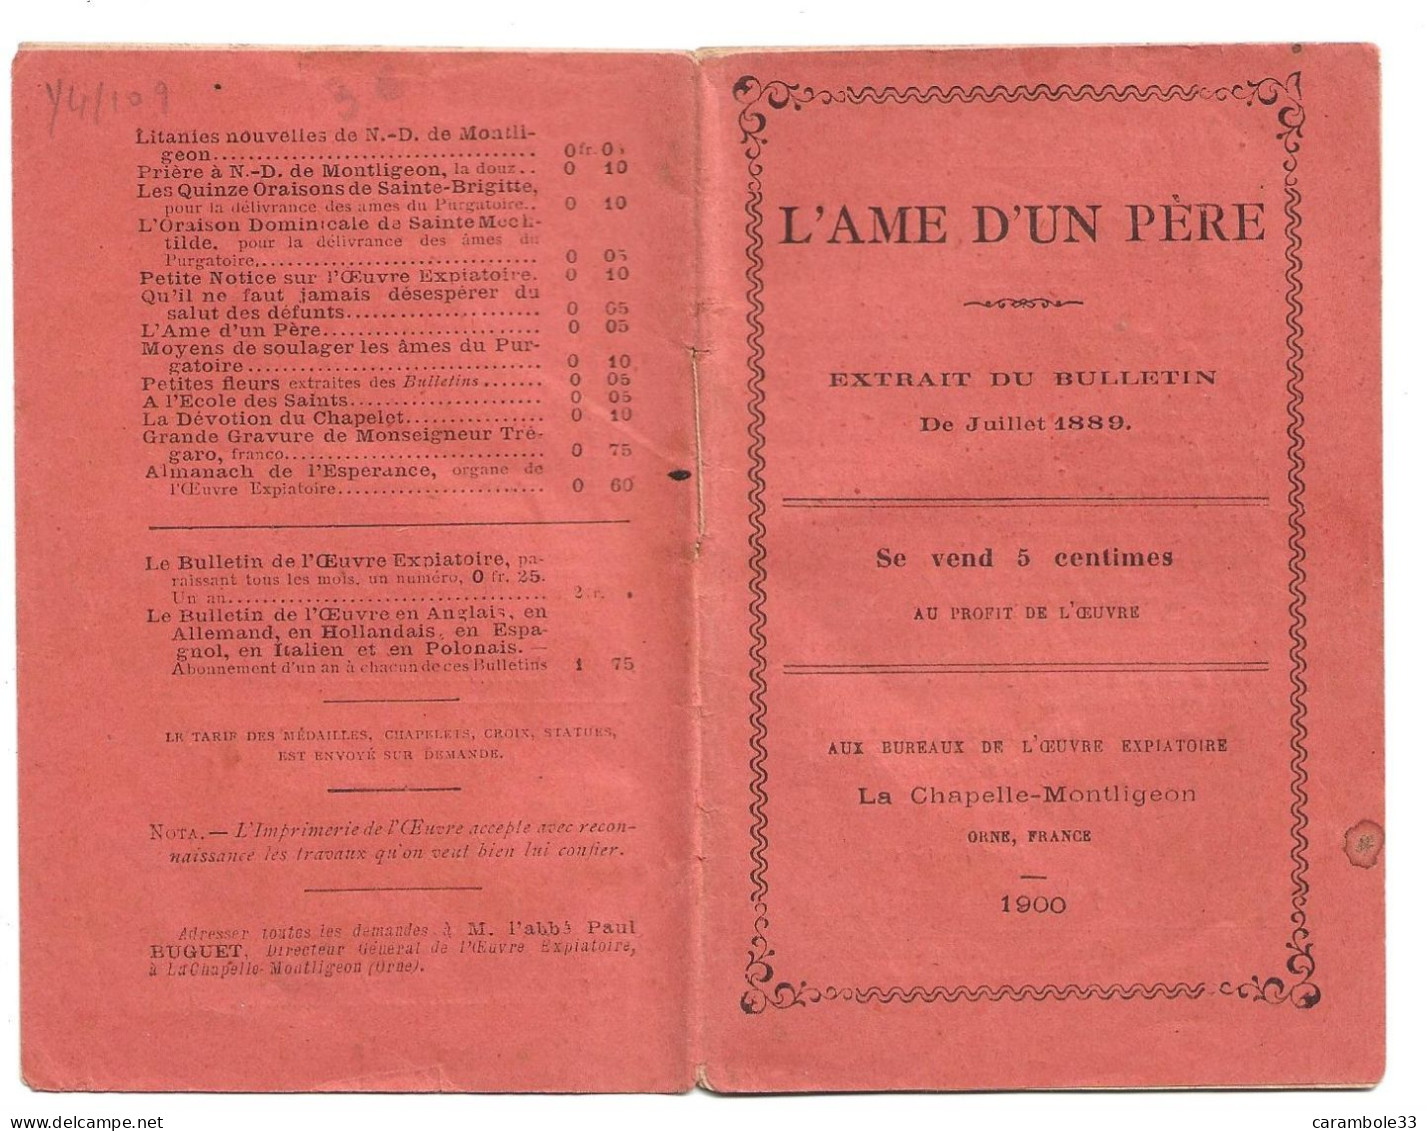 L'AME D'UN PERE   La Chapelle-Montligeon  ORNE  1900   EXTRAIT DU BULLETIN Juillet 1880  (1447) - Programmes